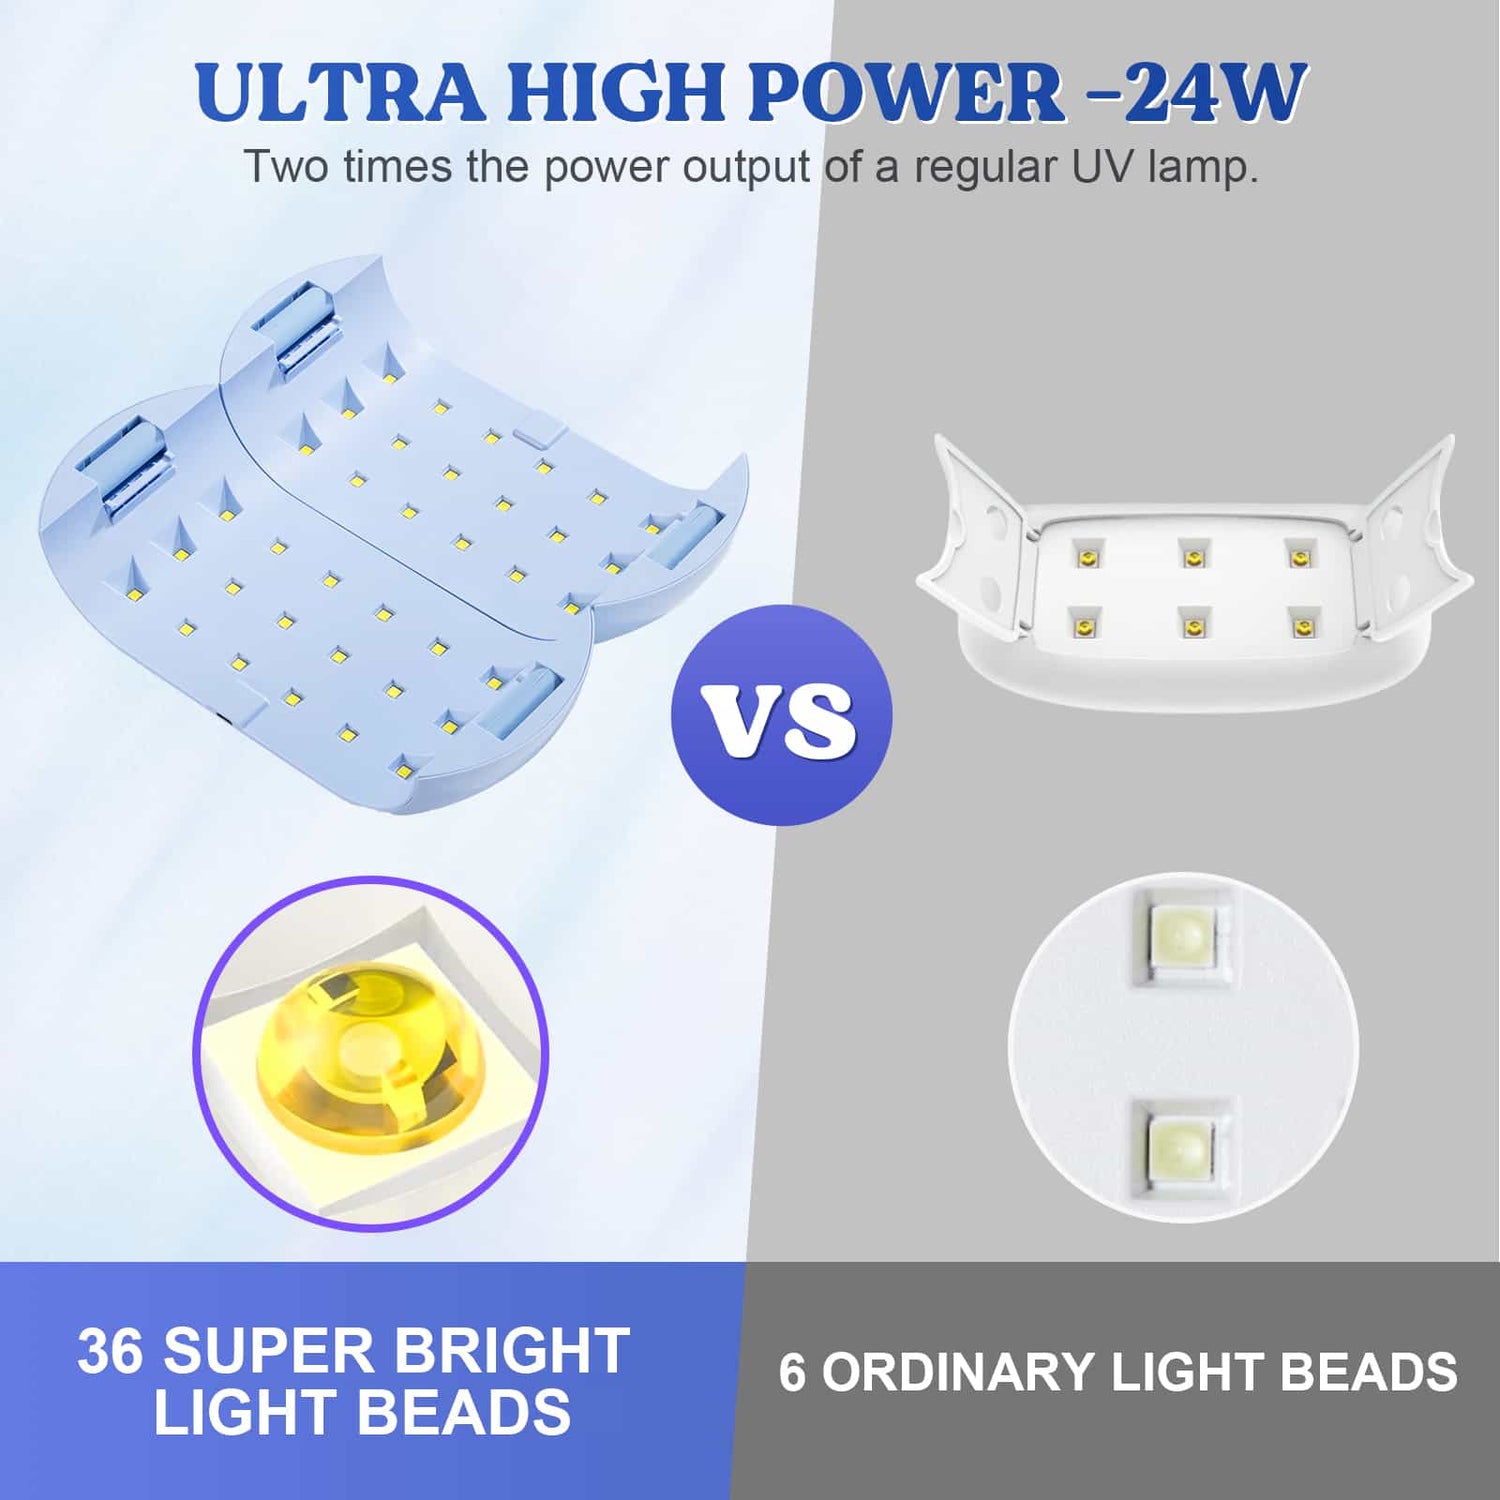  2 Pack UV Light For Resin, Large Size Dual Wavelength UV  Resin Light And Portable UV Lamp For Resin Curing, UV Resin Kit, Resin  Supplies For UV Resin, Jewelry Making